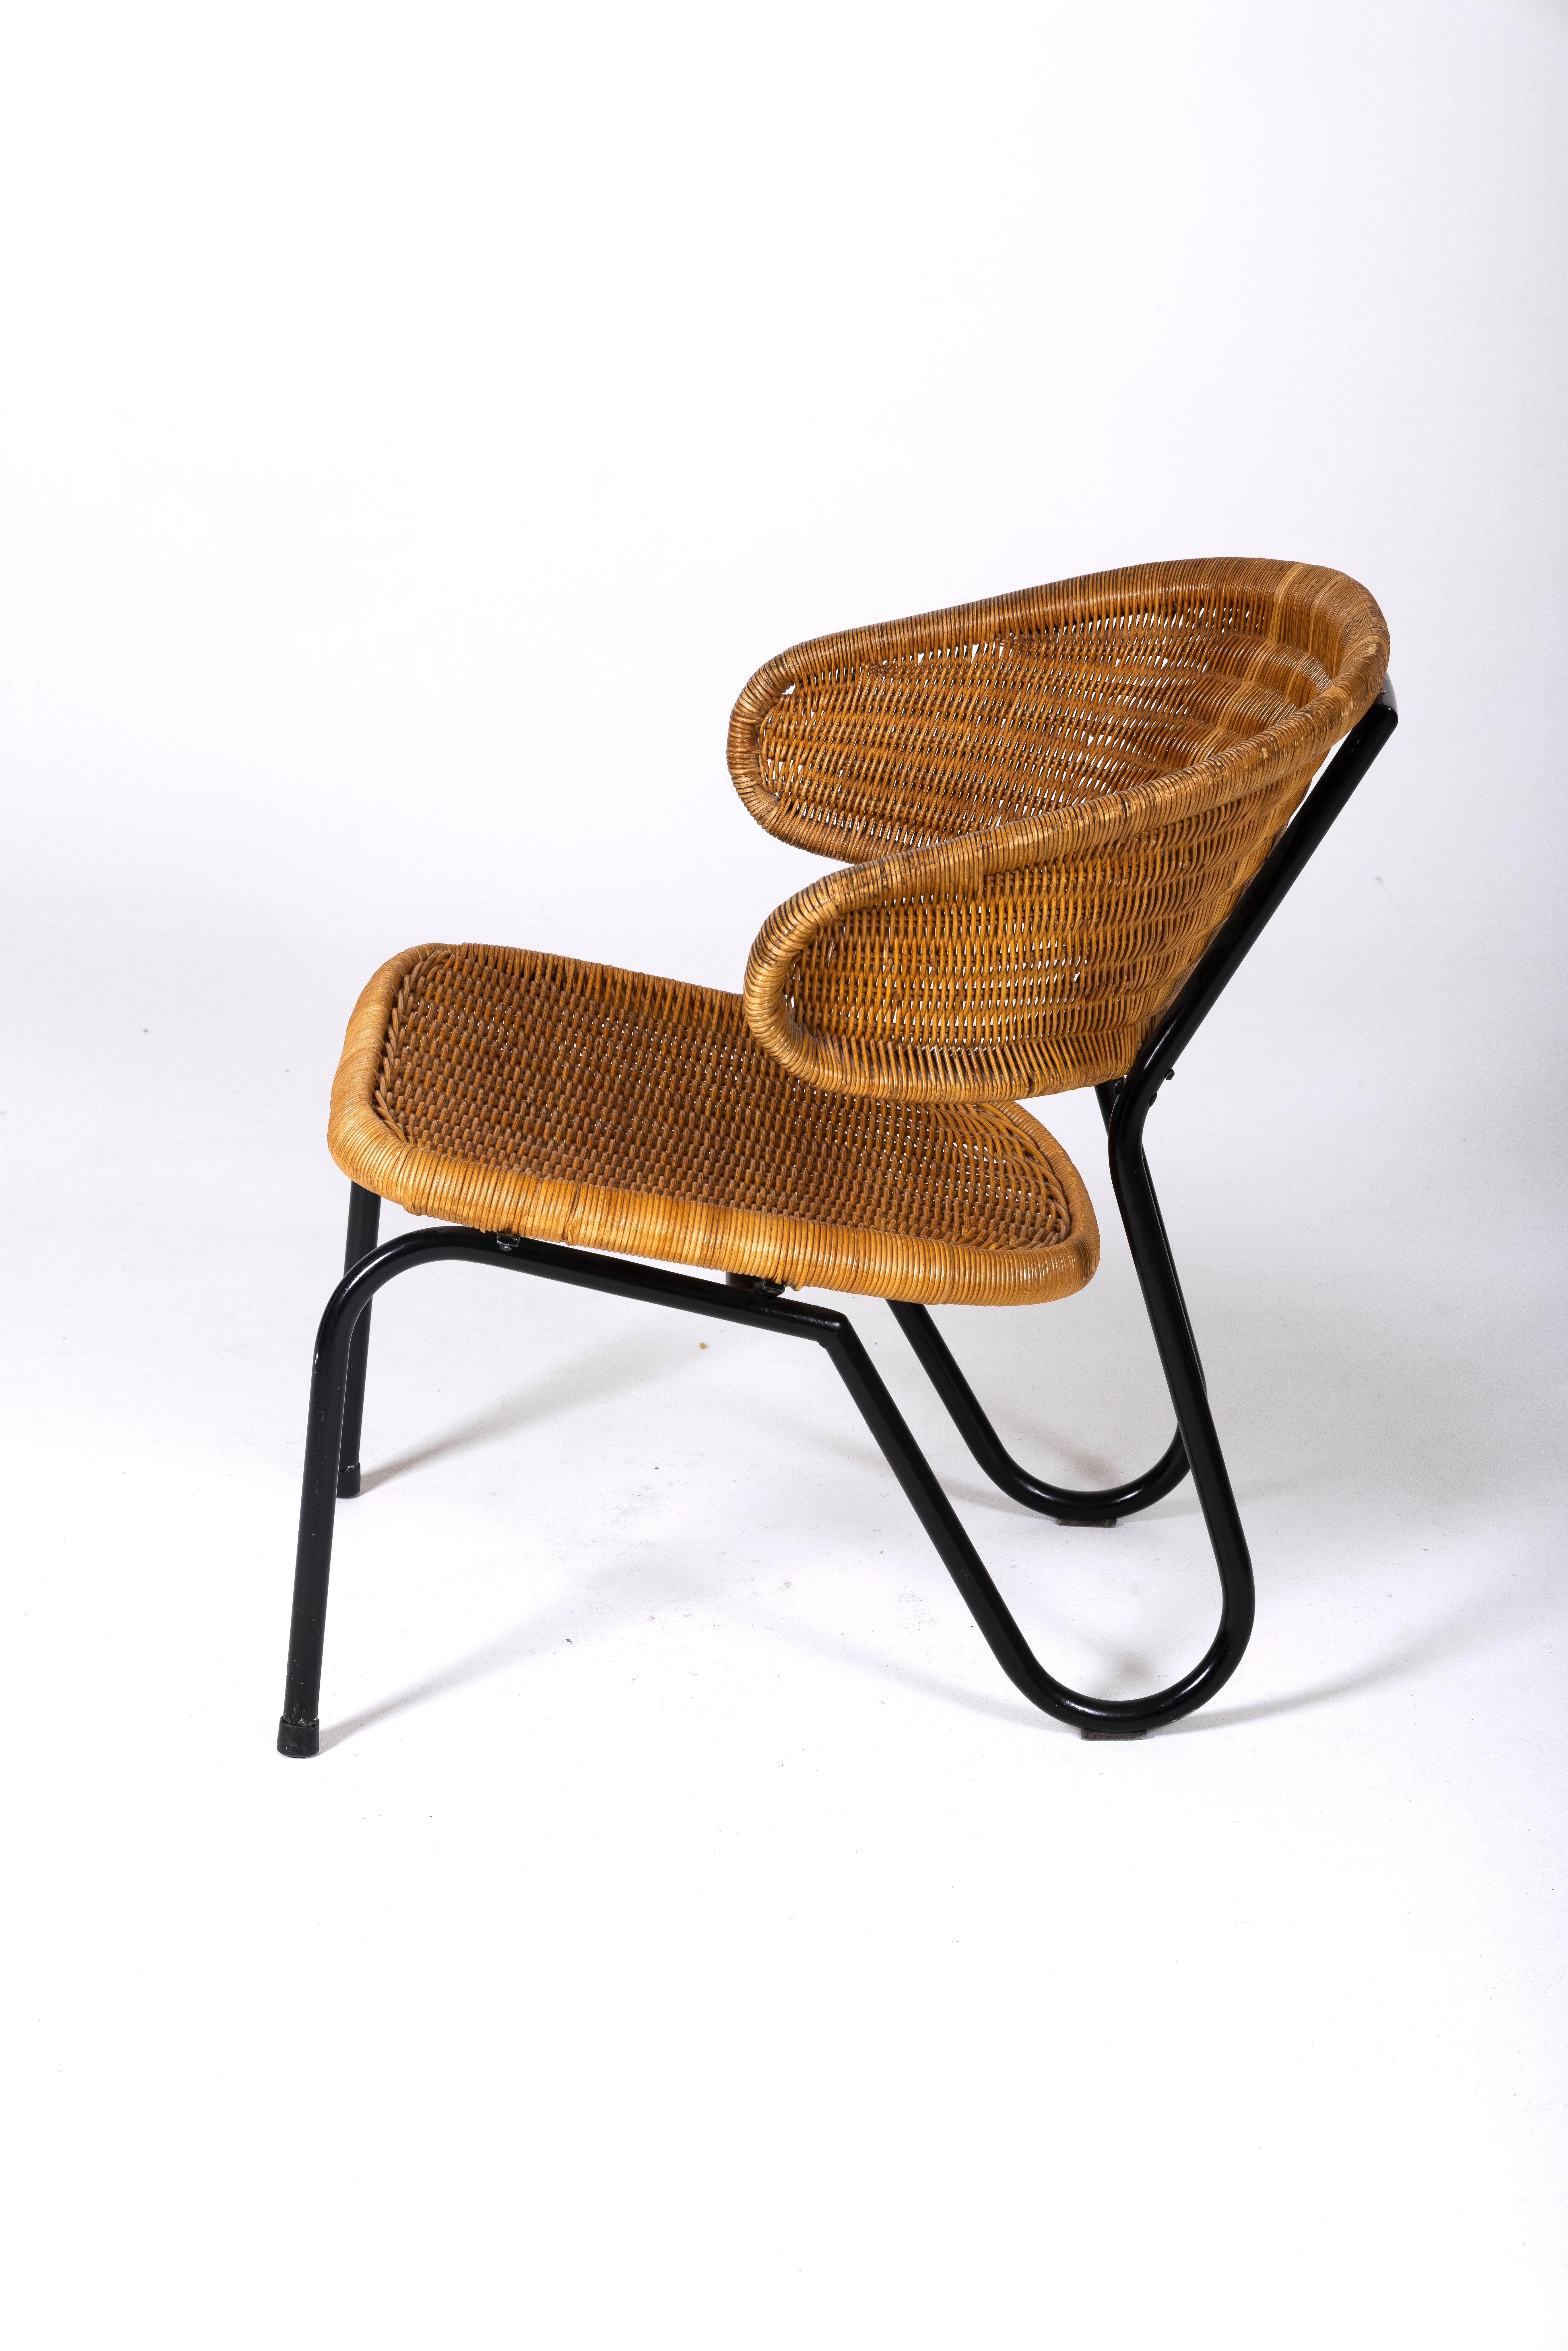 Mid-20th Century Wooden armchair by Dirk Van Sliedregt.